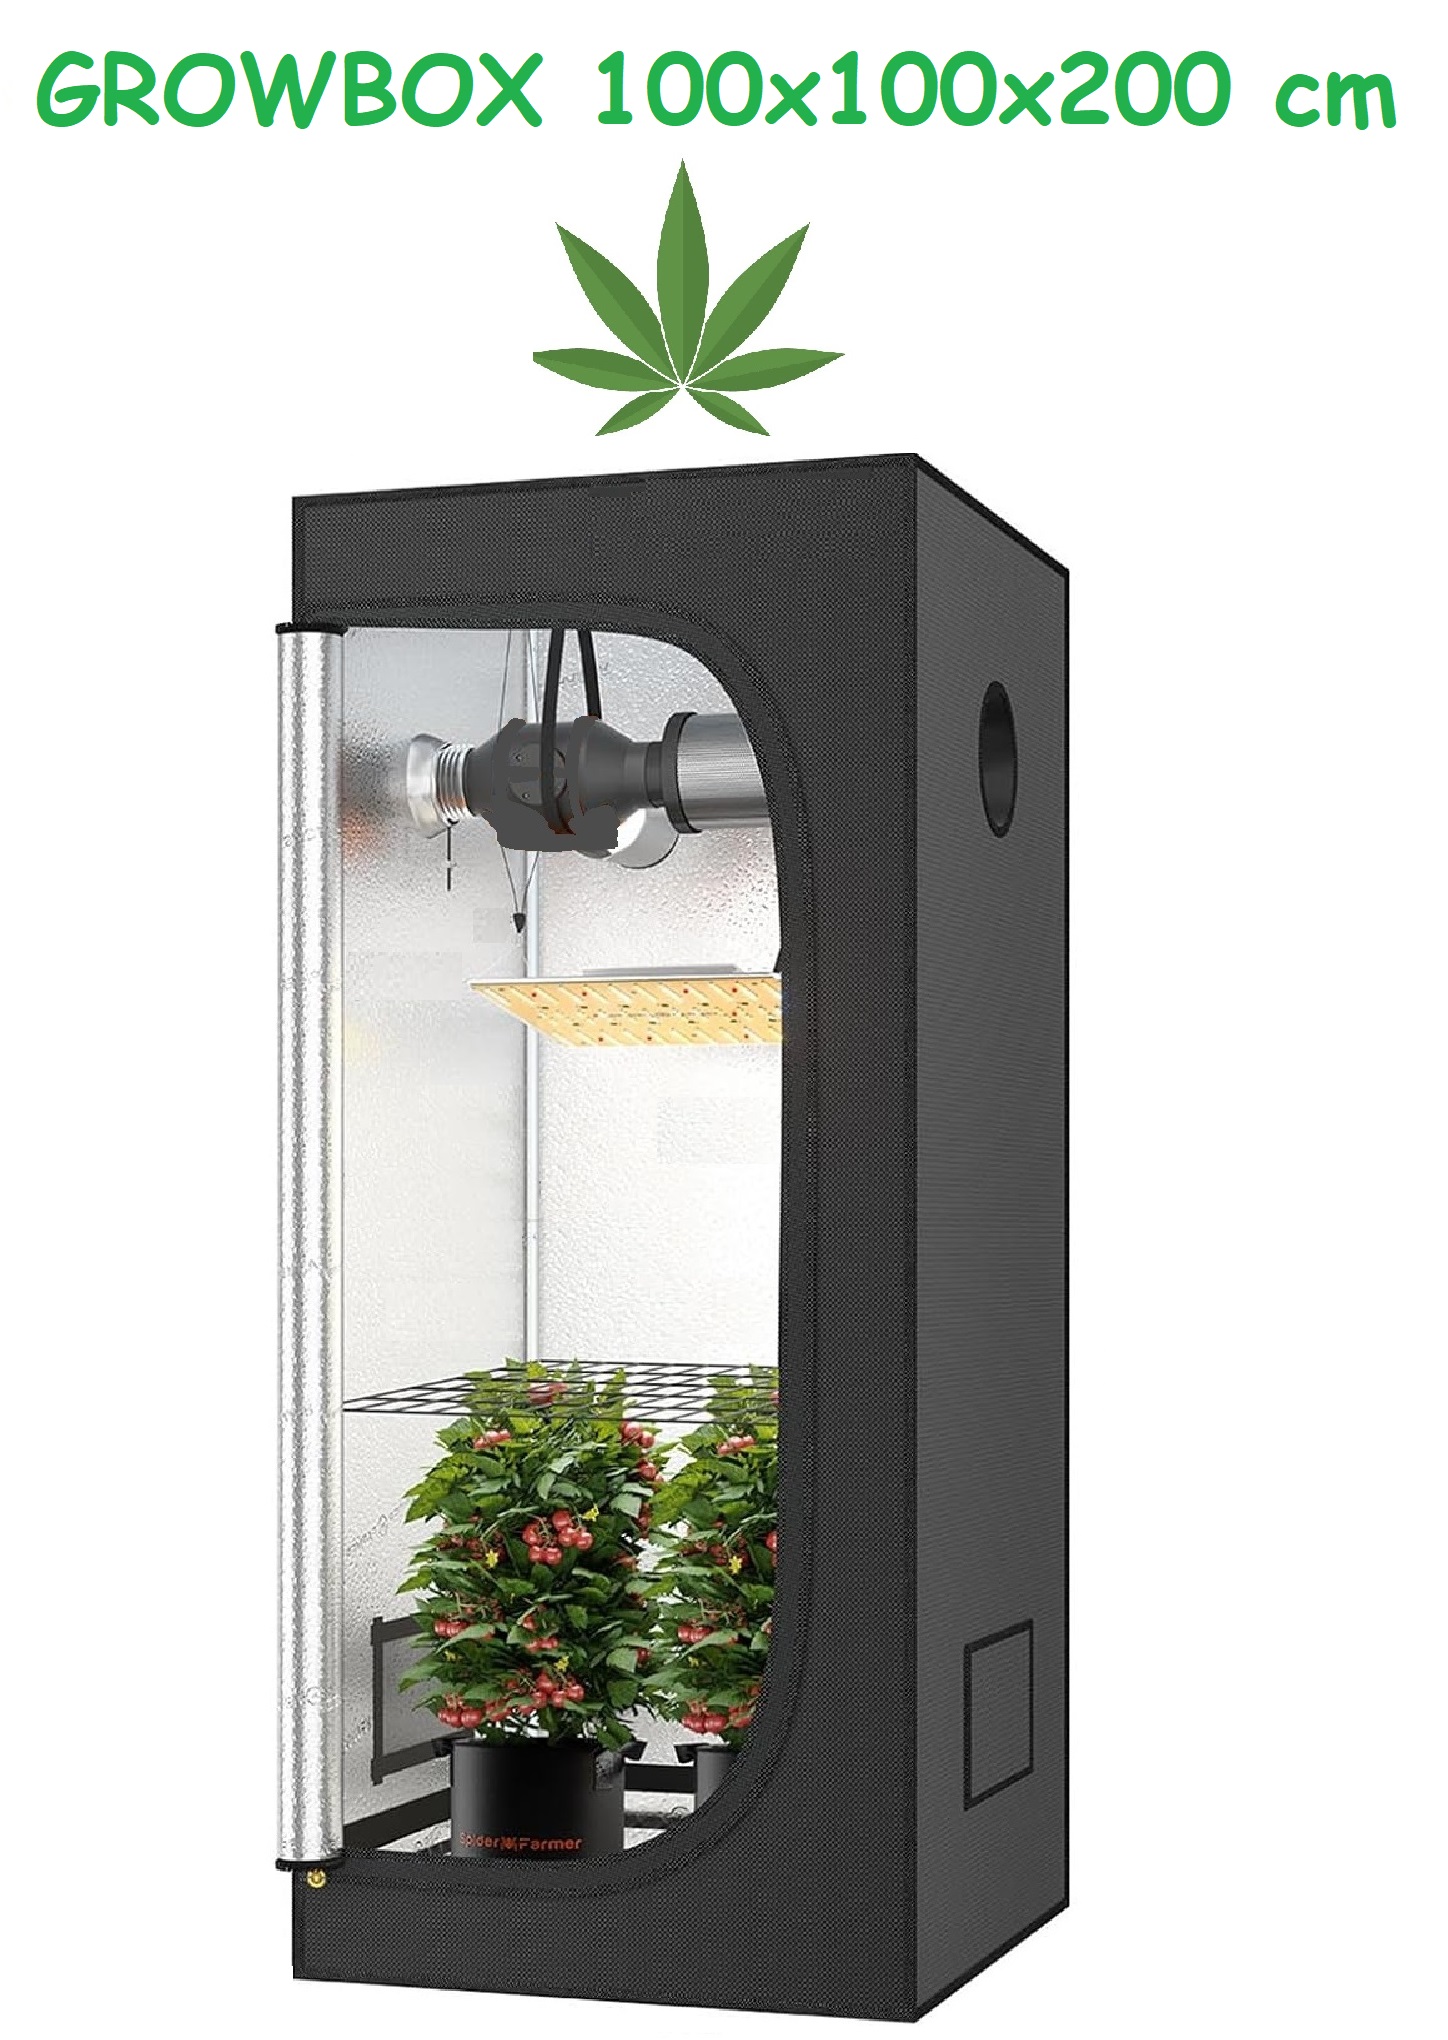 JUNG Growbox Growzelt Indoor 100x100x200cm Gewächshaus Cannabis Balkon Grow Tent